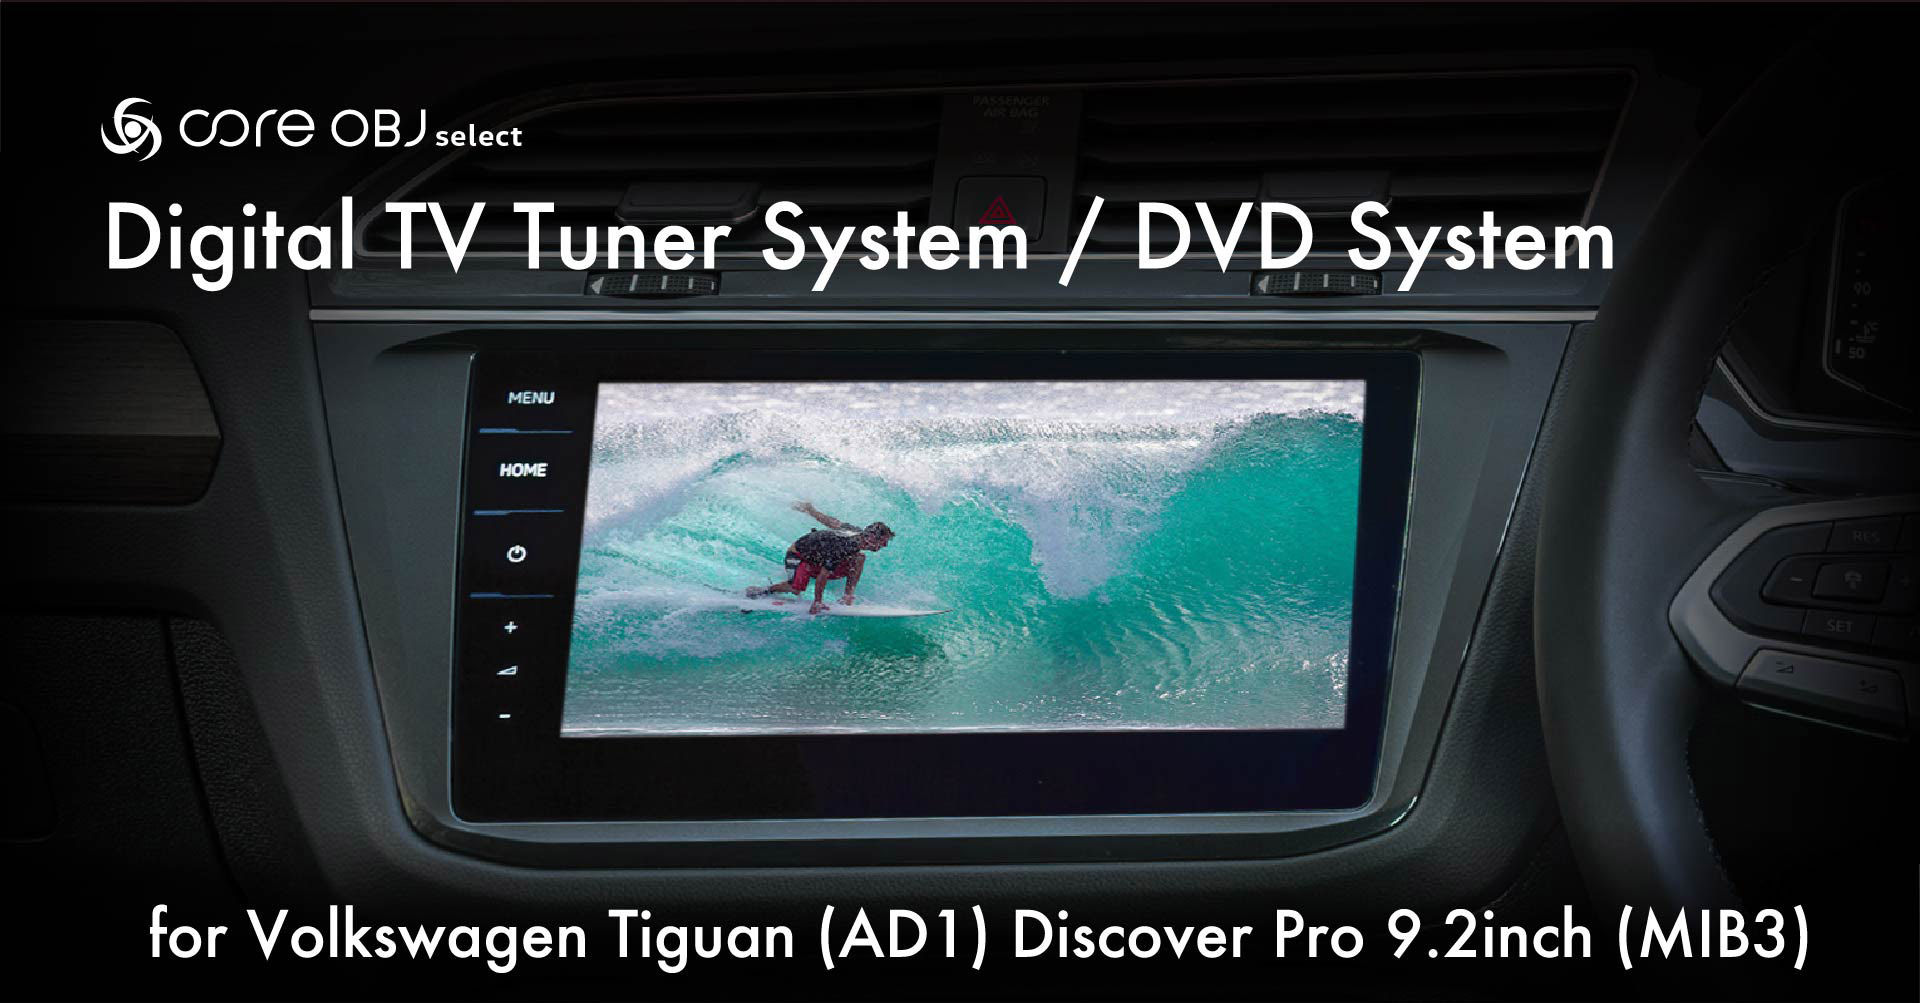 Digital TV Tuner System / DVD System